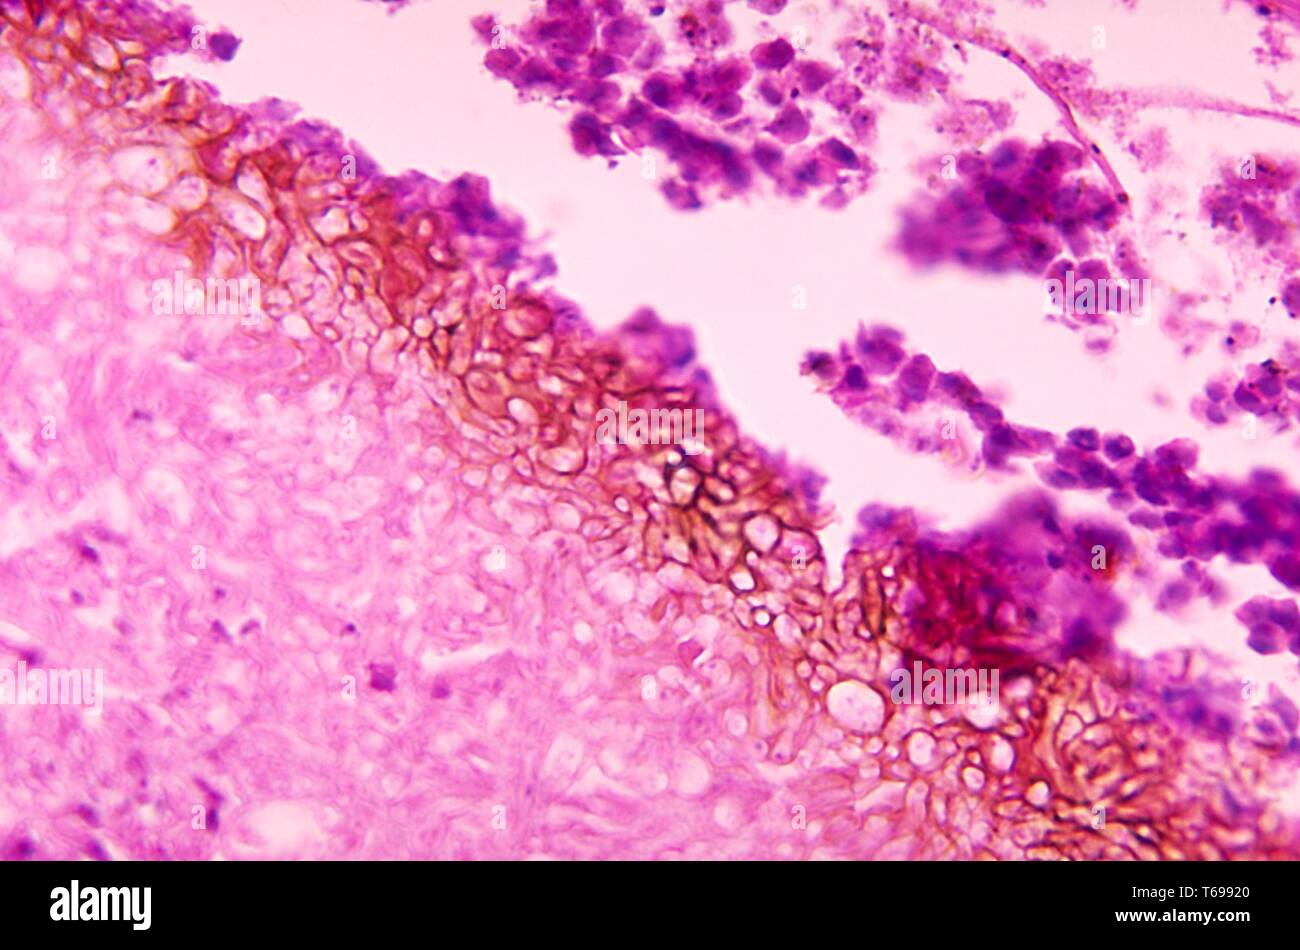 La fotomicrografia della variazioni istopatologiche in grano nero mycetoma causate da funghi Madurella grisea, 1970. Immagine cortesia di centri per il controllo e la prevenzione delle malattie (CDC) / Dr Libero Ajello. () Foto Stock